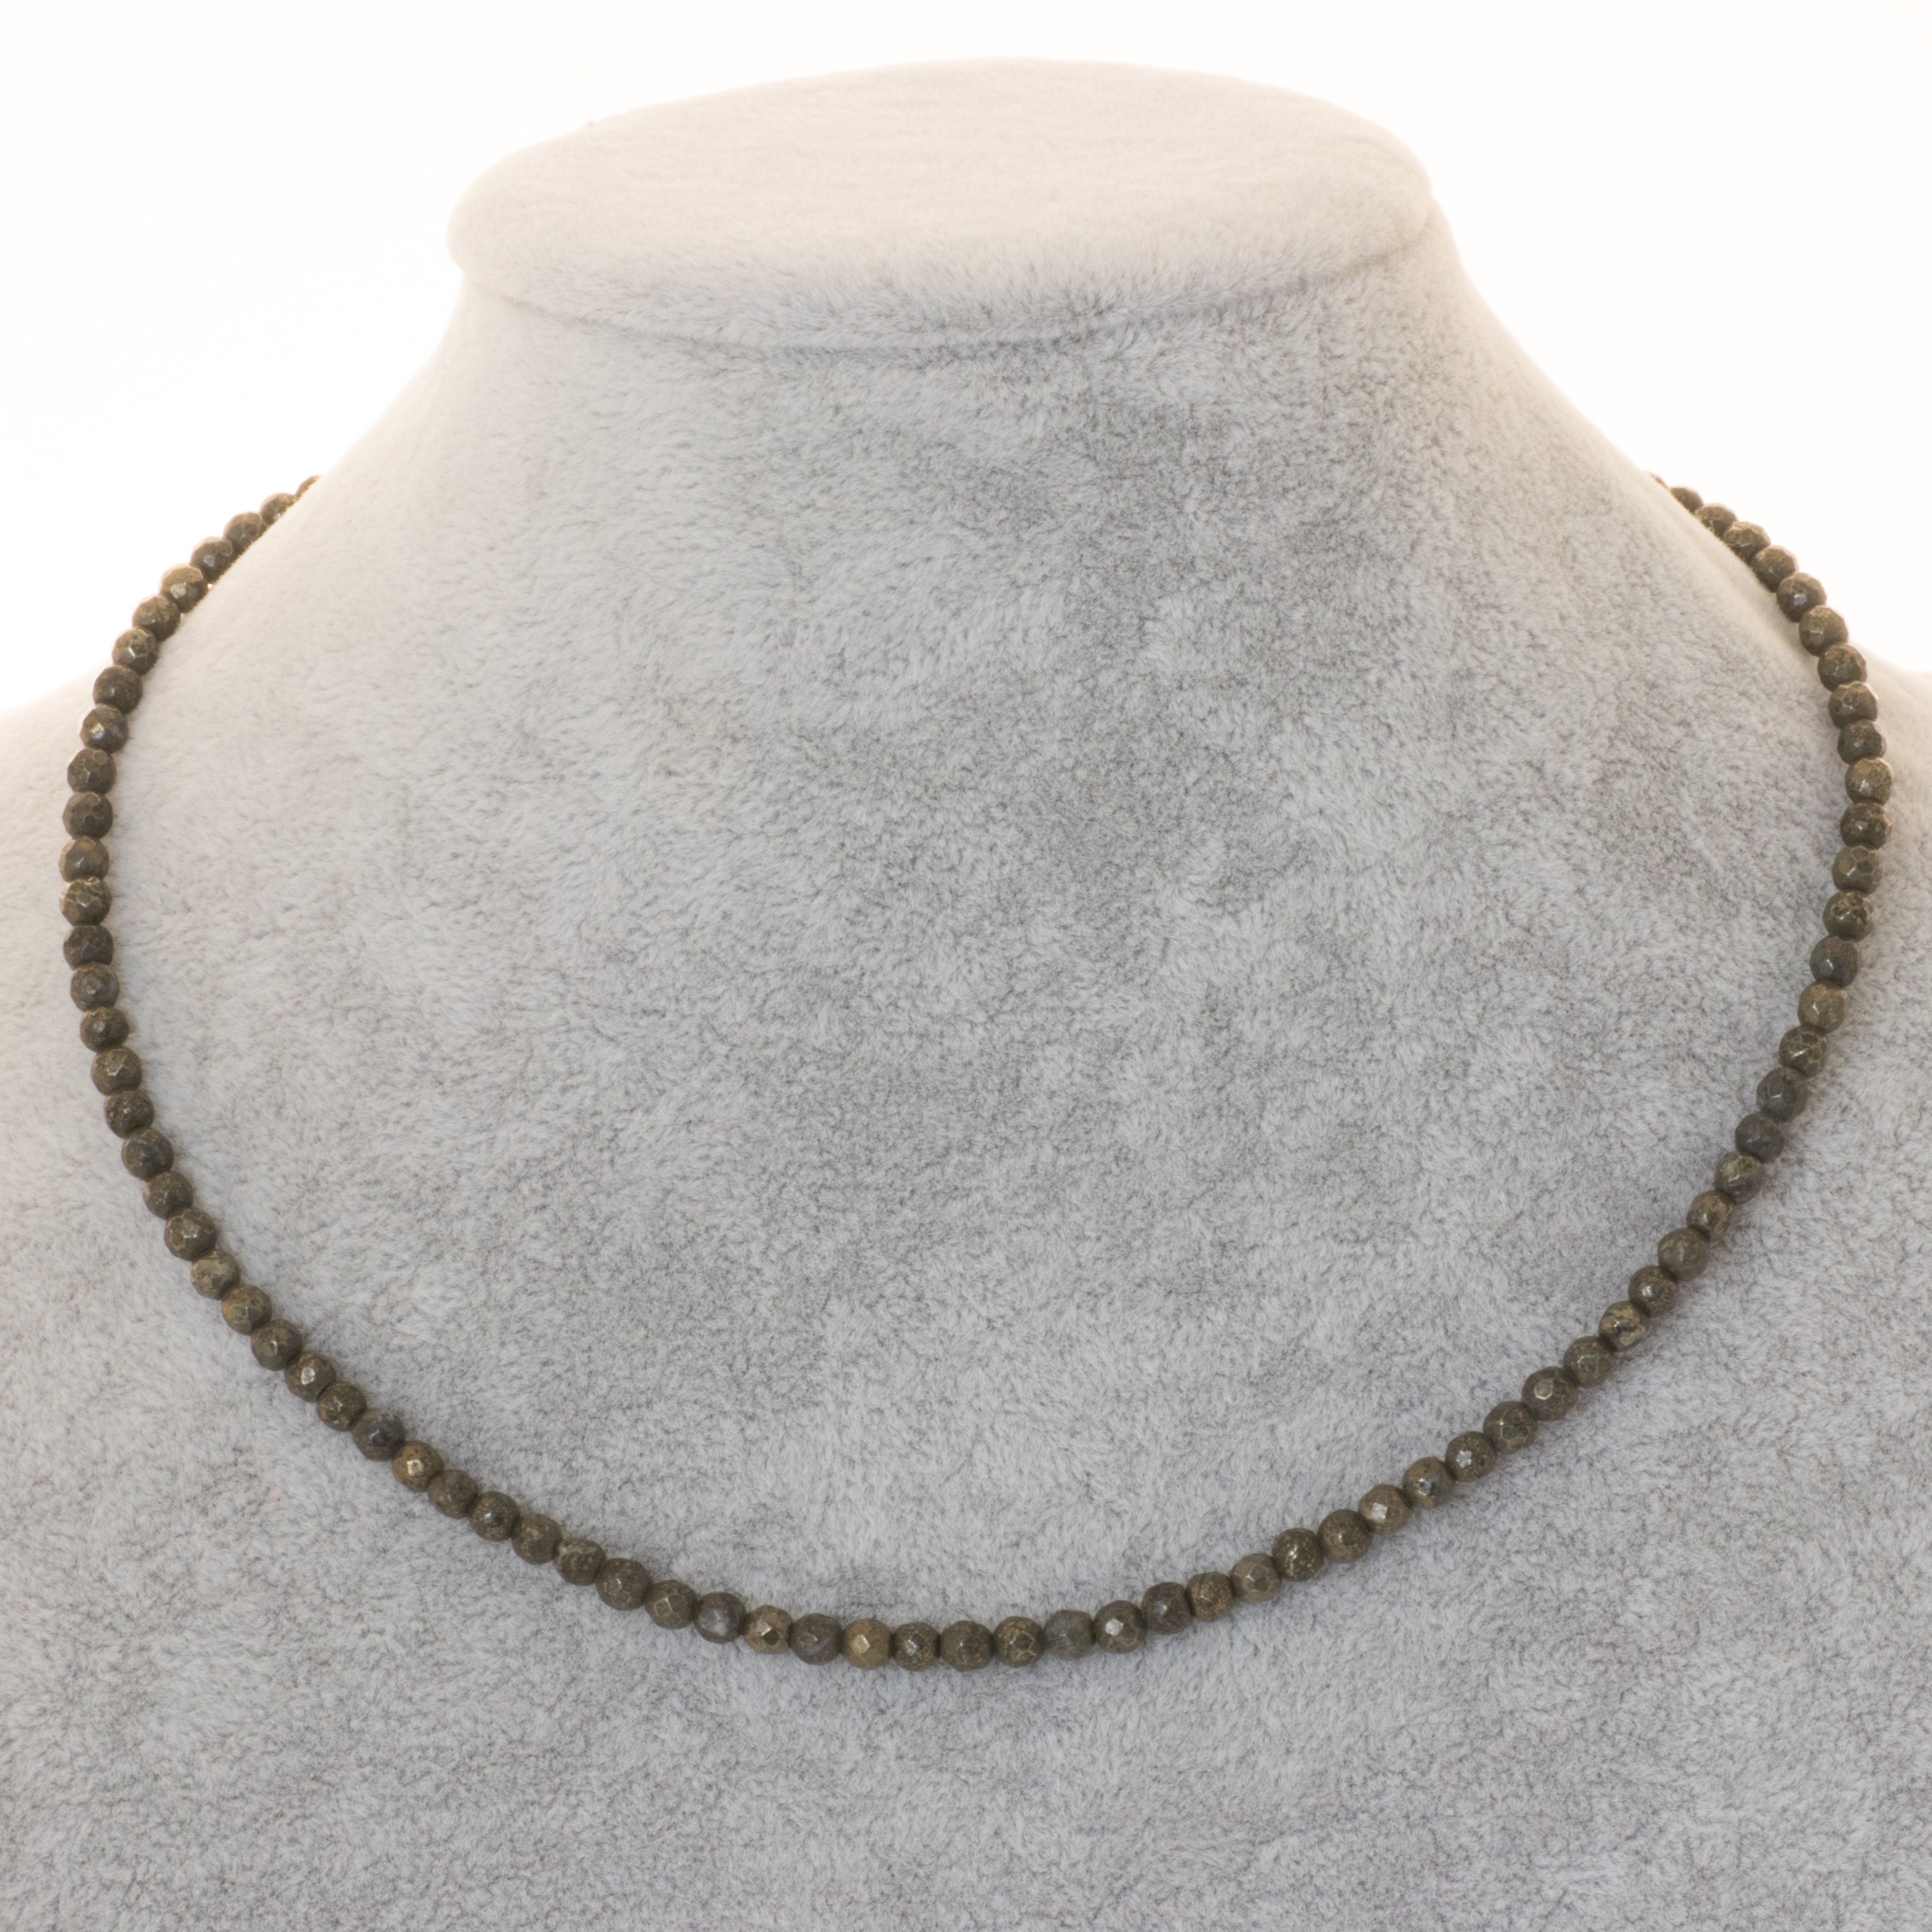 Damen Schmuck Bella Carina Perlenkette Kette mit Pyrit Perlen 4 mm facettiert, Silber Karabiner